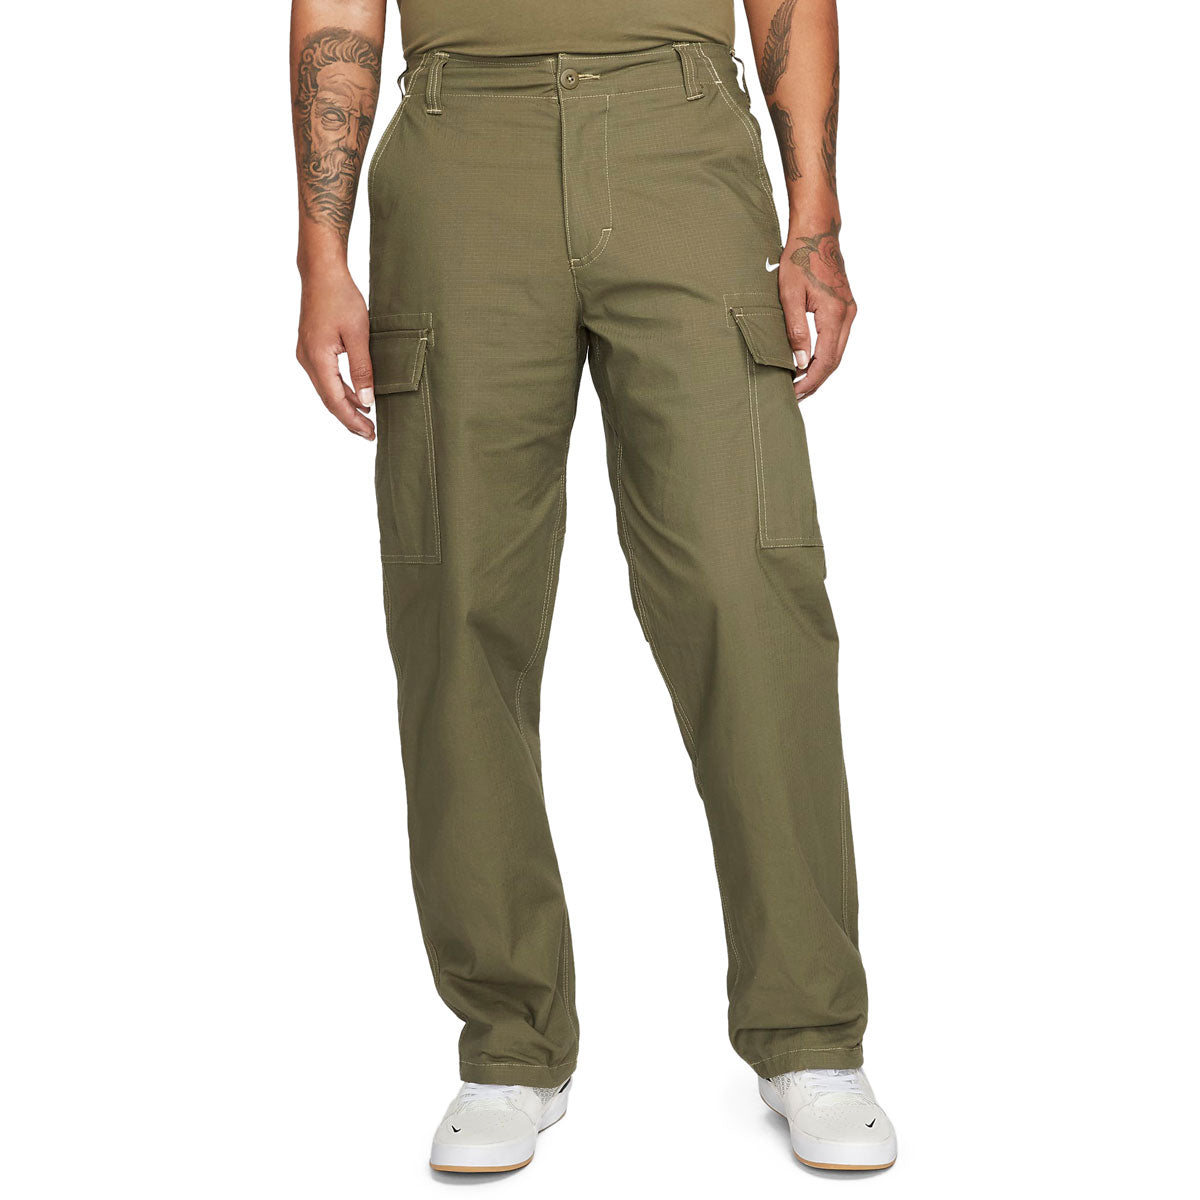 Nike SB Kearny Cargo Pants - Medium Olive/White image 1